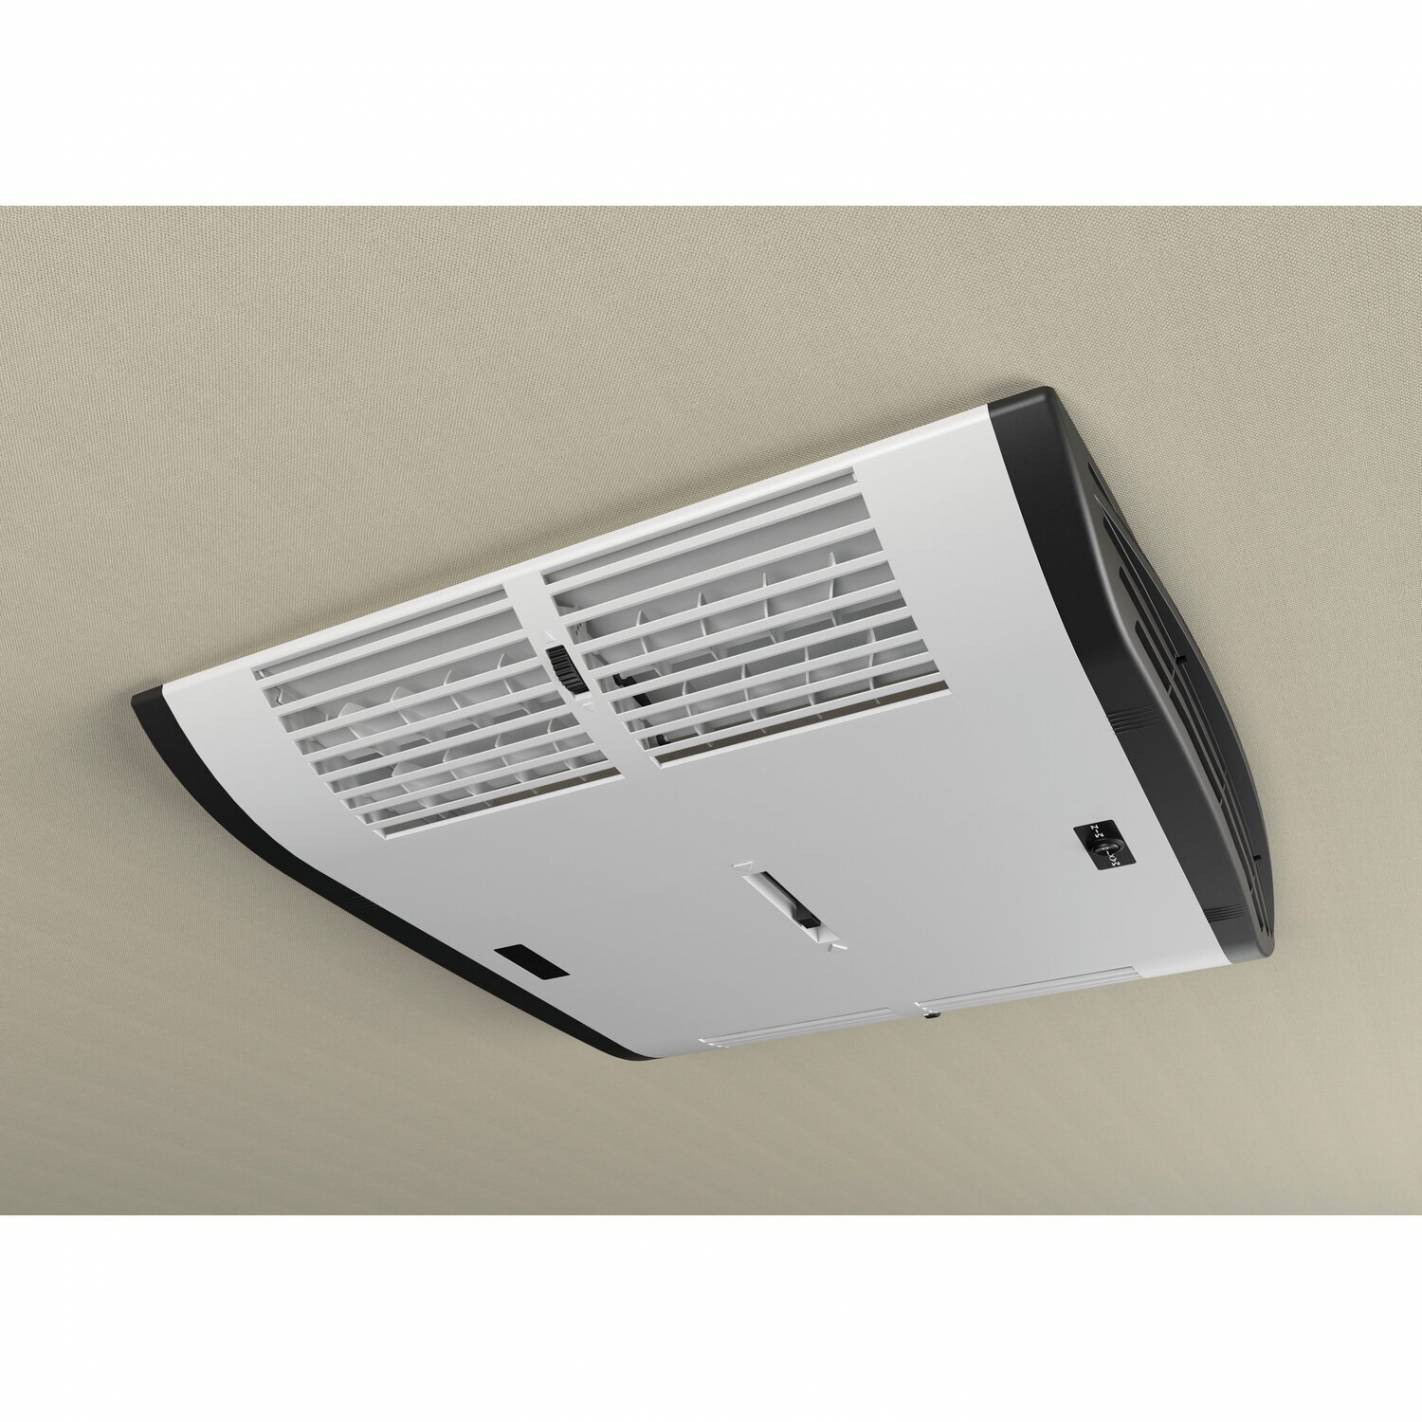 Klimaanlage Plein-Aircon 12V für Kastenwagen - Just4Camper Indel RG-182774